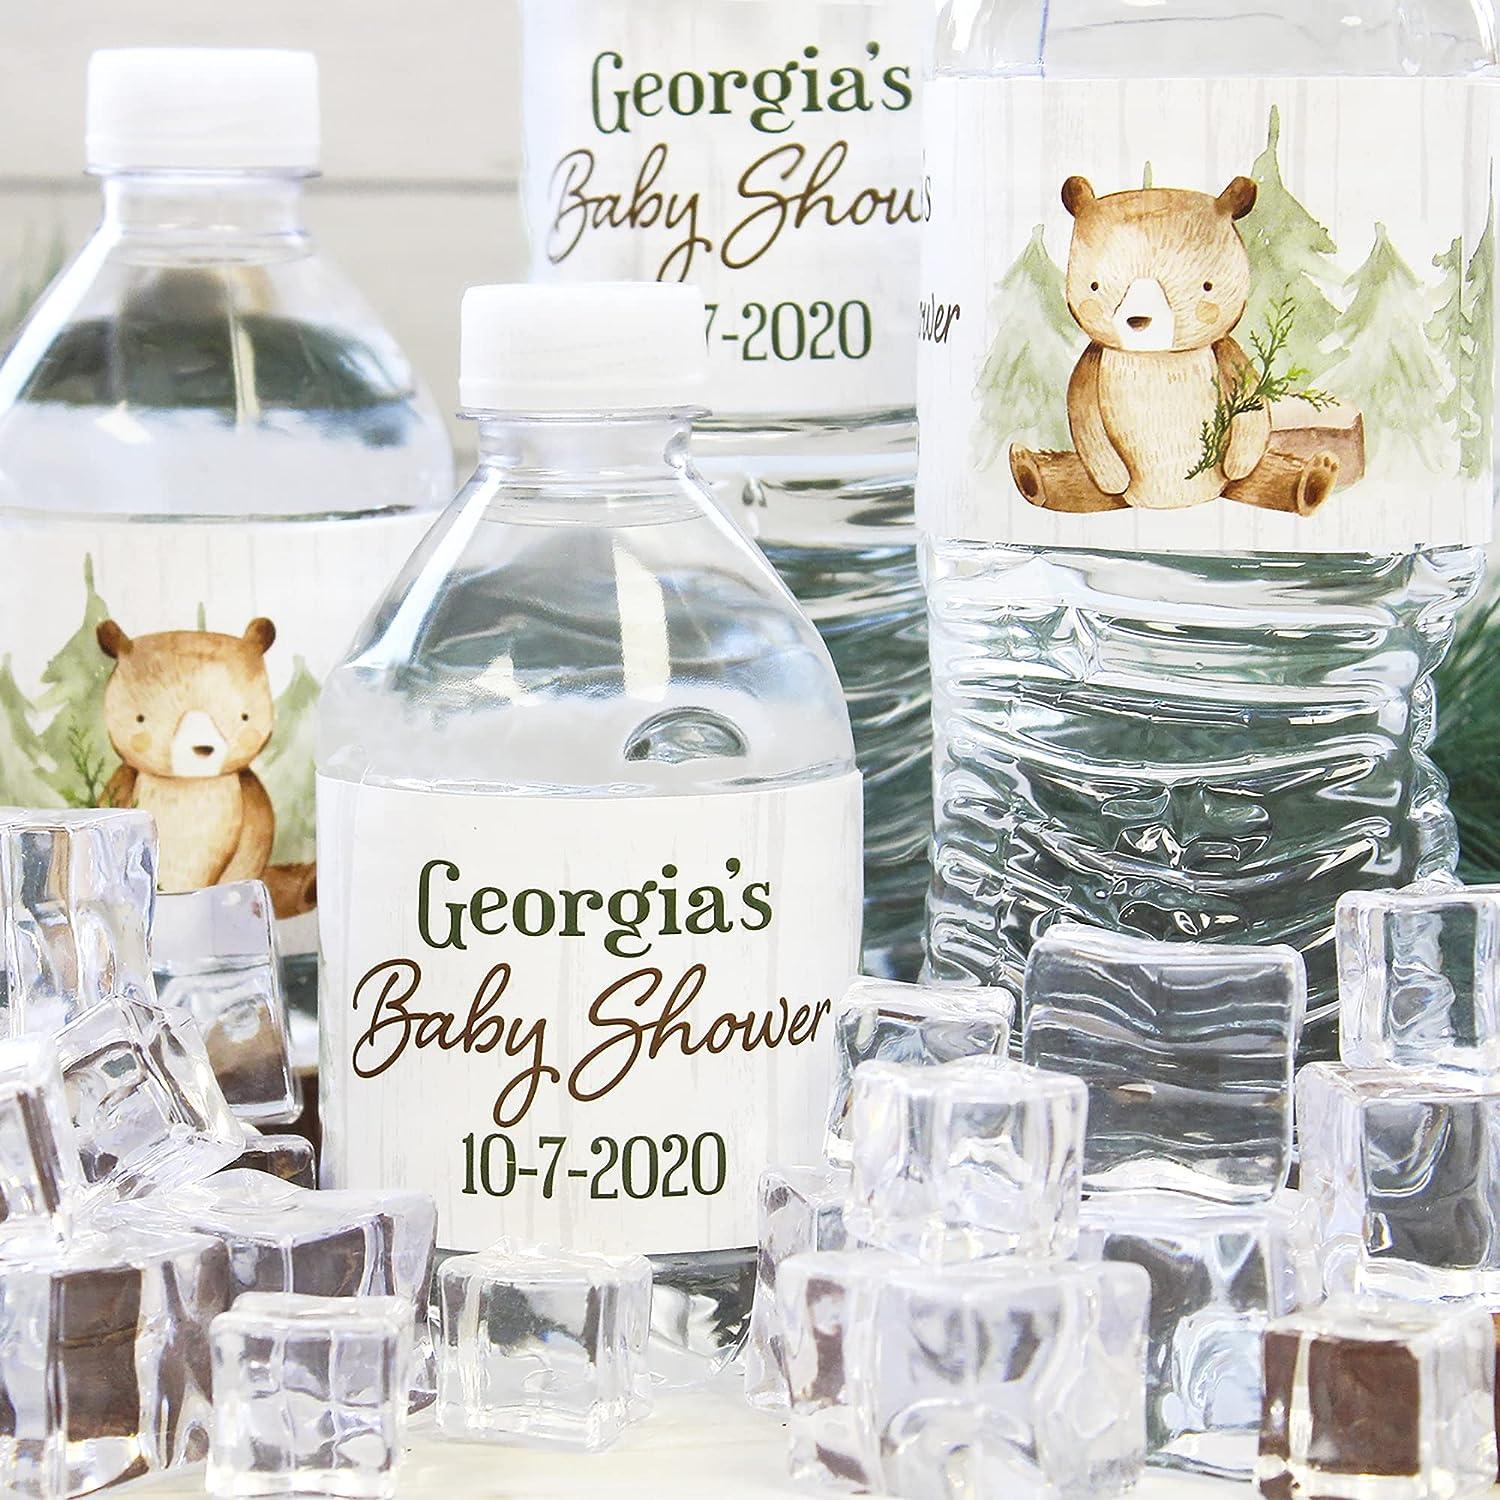 Personalized Teddy Bear Theme Water Bottle Label